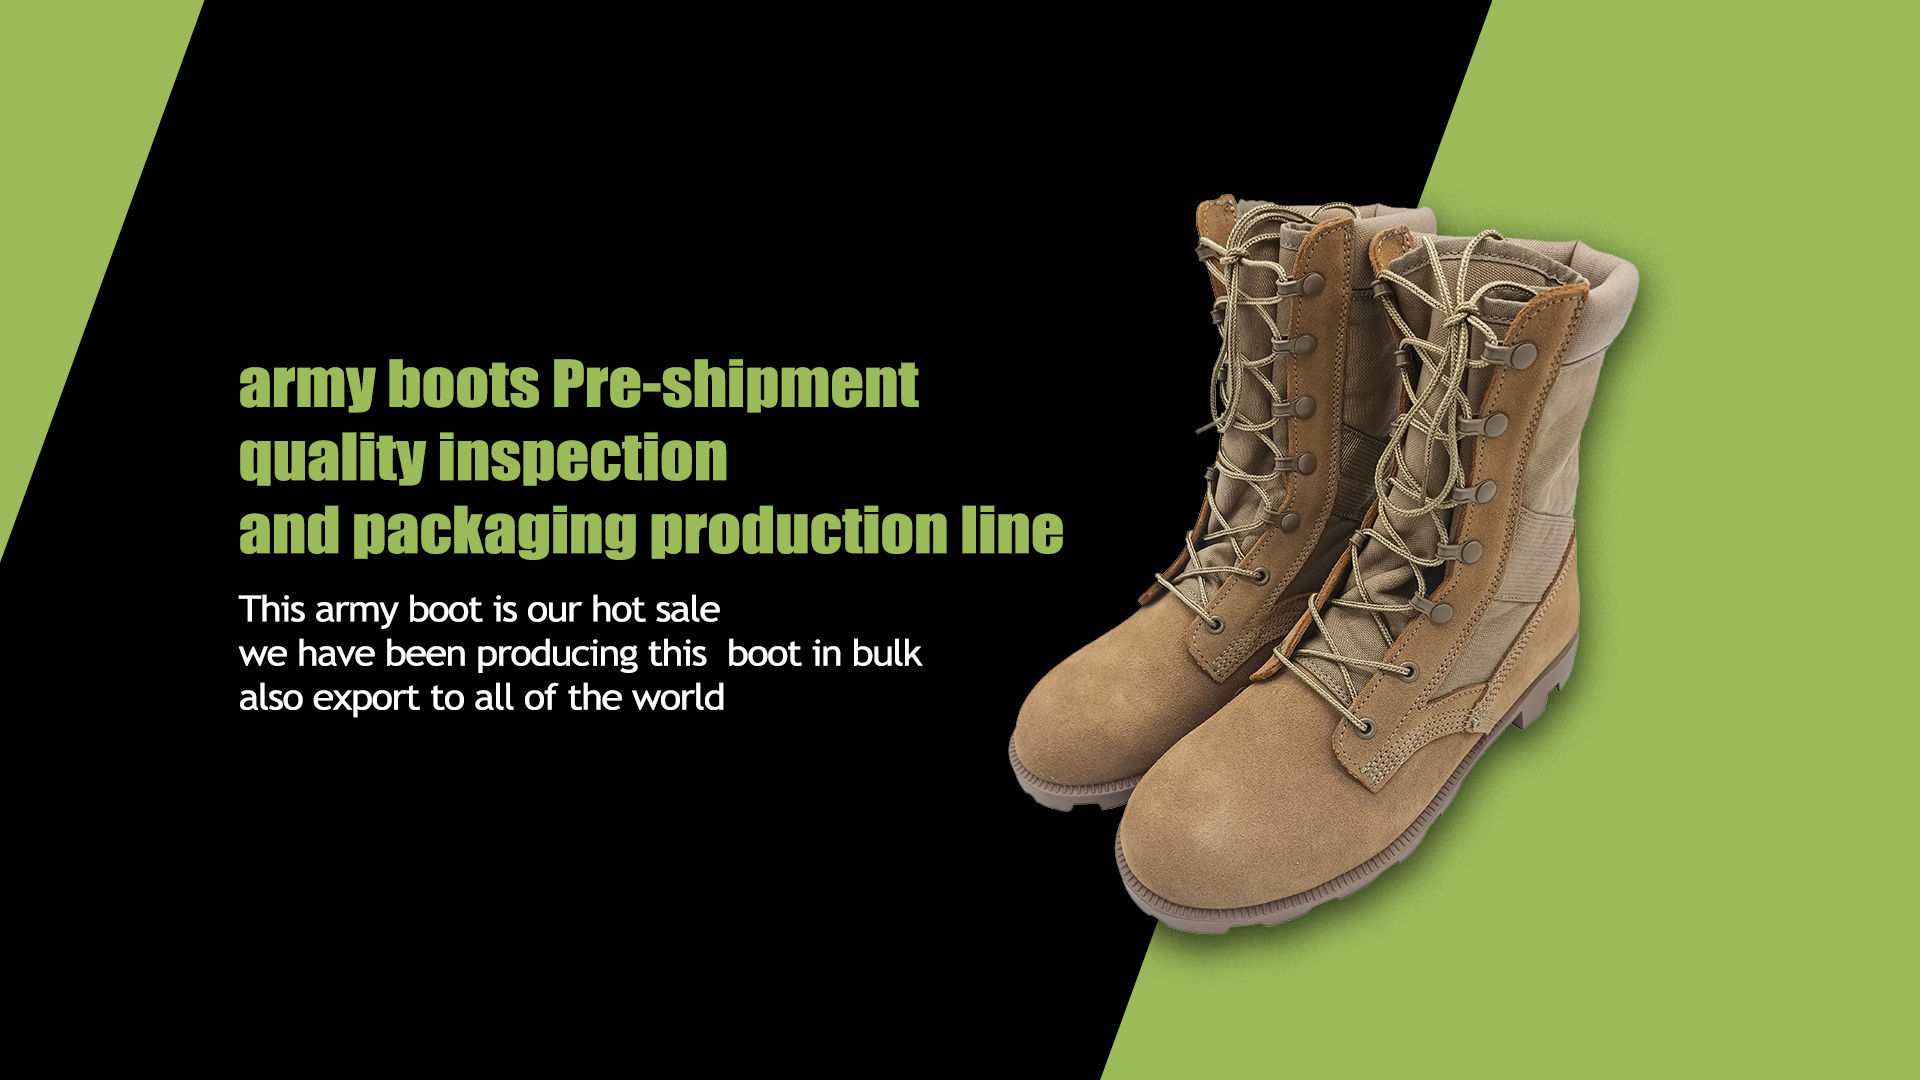 армейские ботинки Предотгрузочный контроль качества и производственная линия упаковки